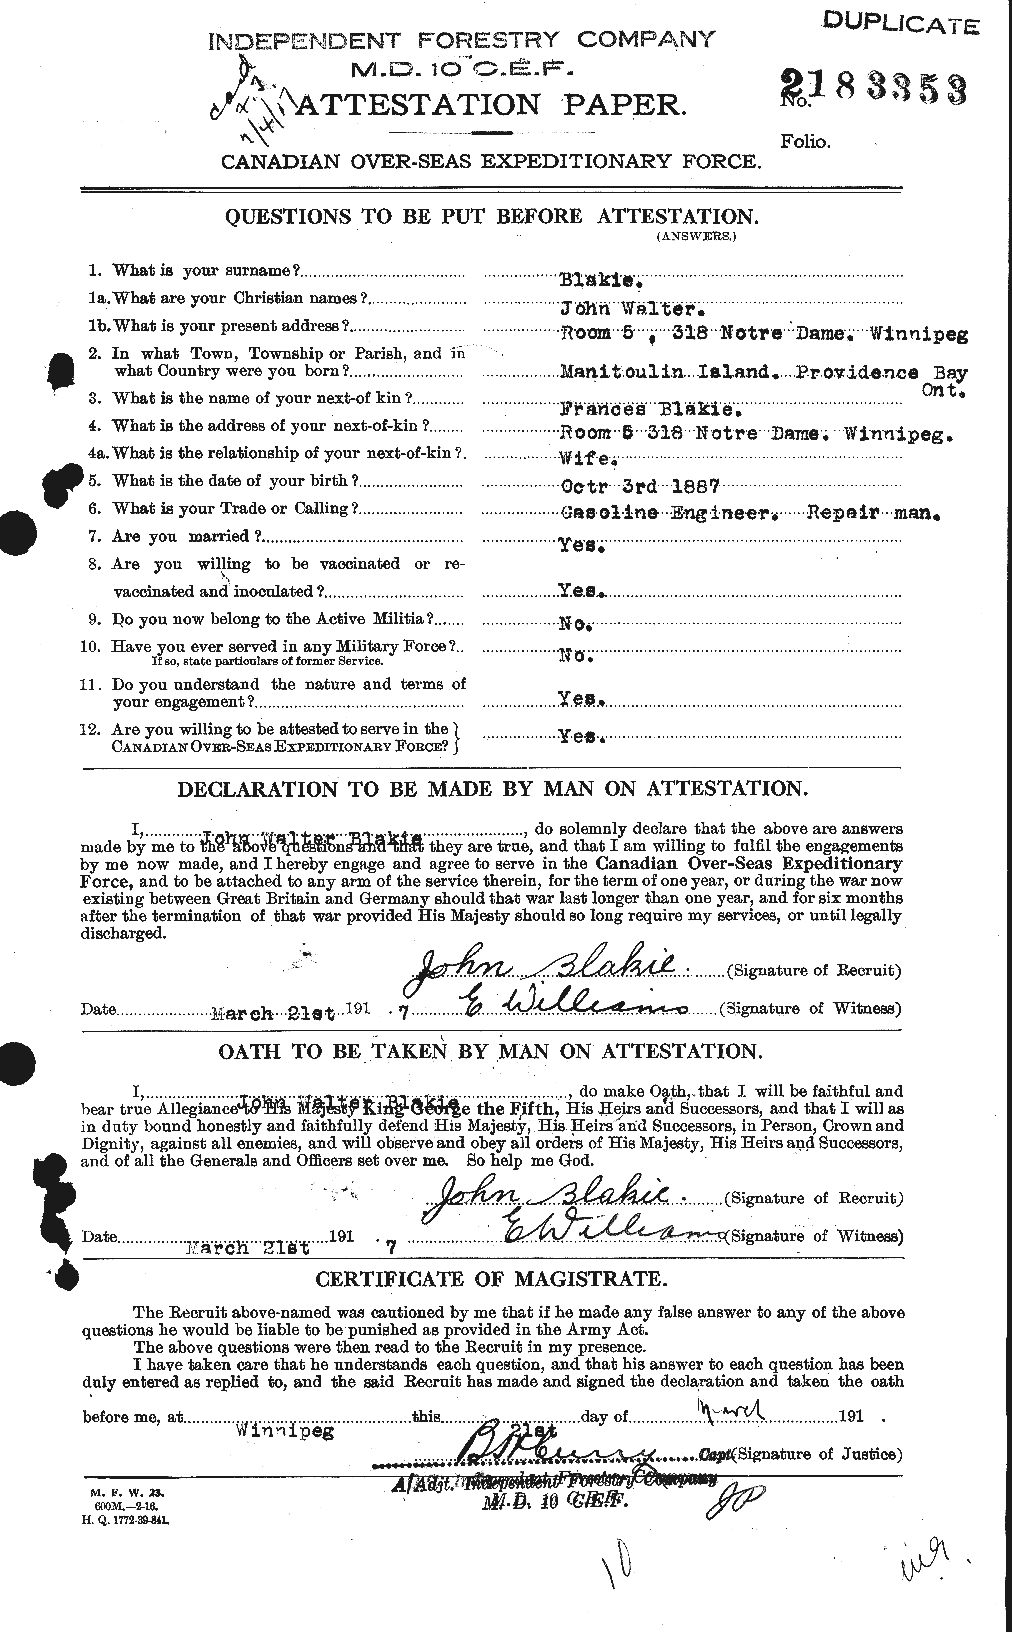 Dossiers du Personnel de la Première Guerre mondiale - CEC 246773a